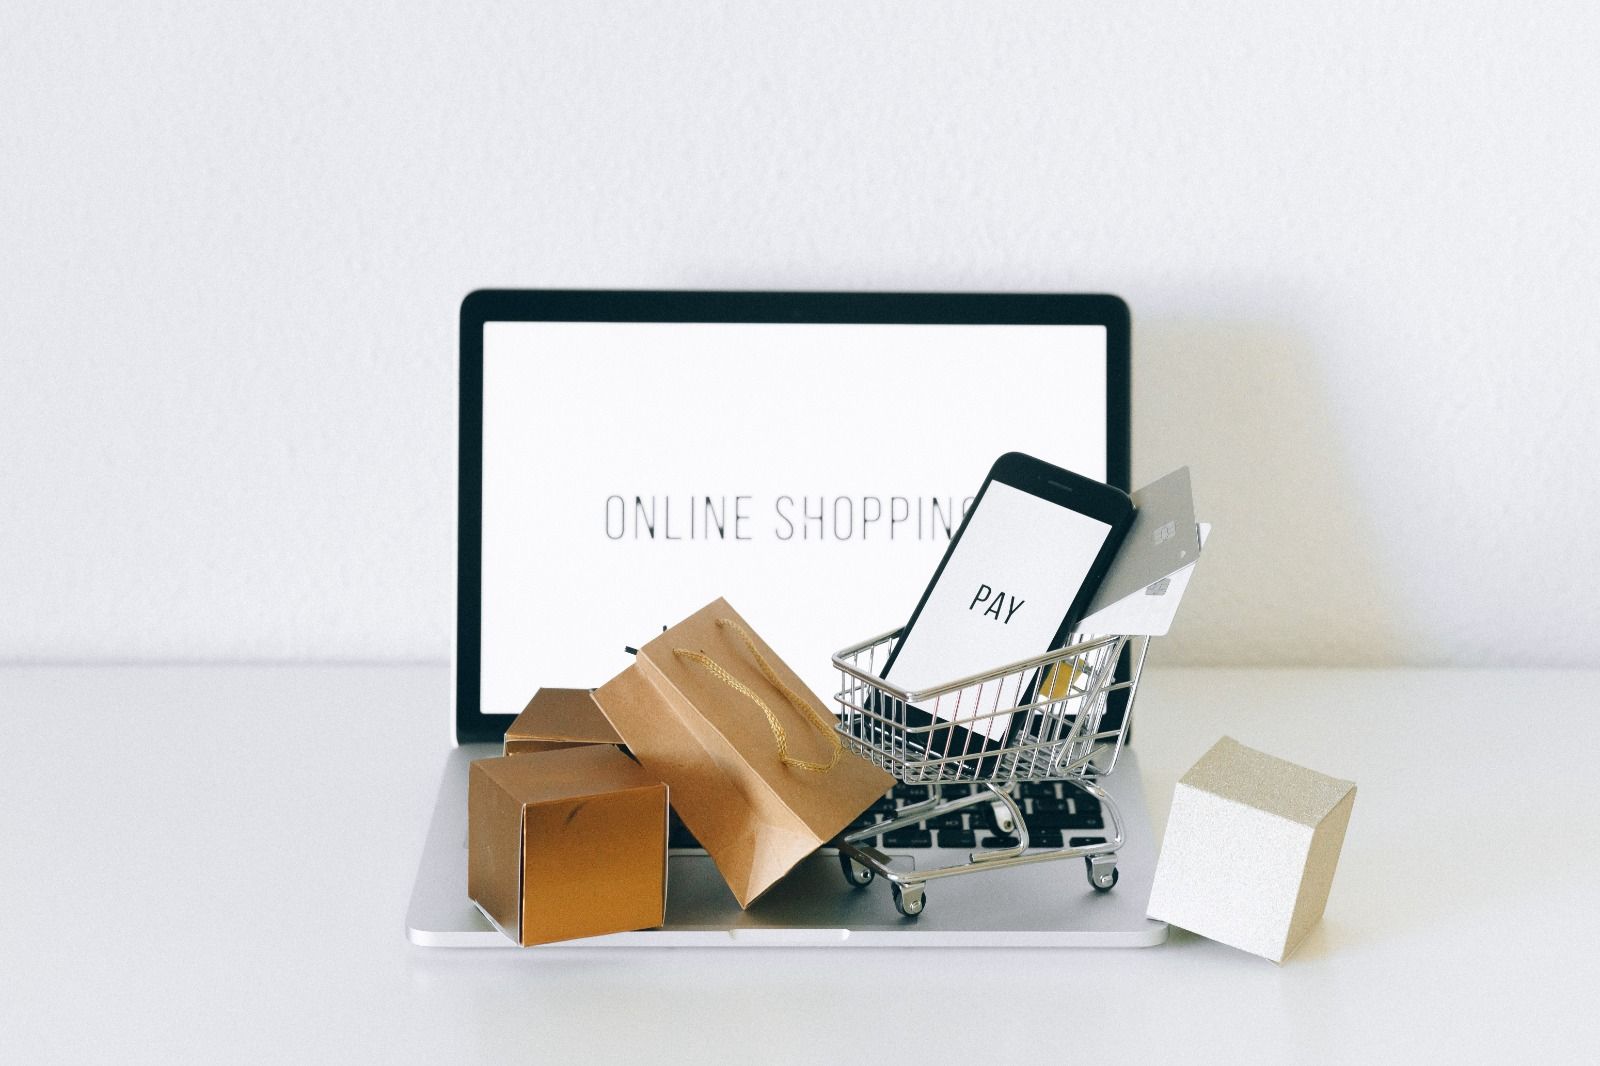 Diadang isu resesi, mana e-commerce nomor 1 pilihan penjual?